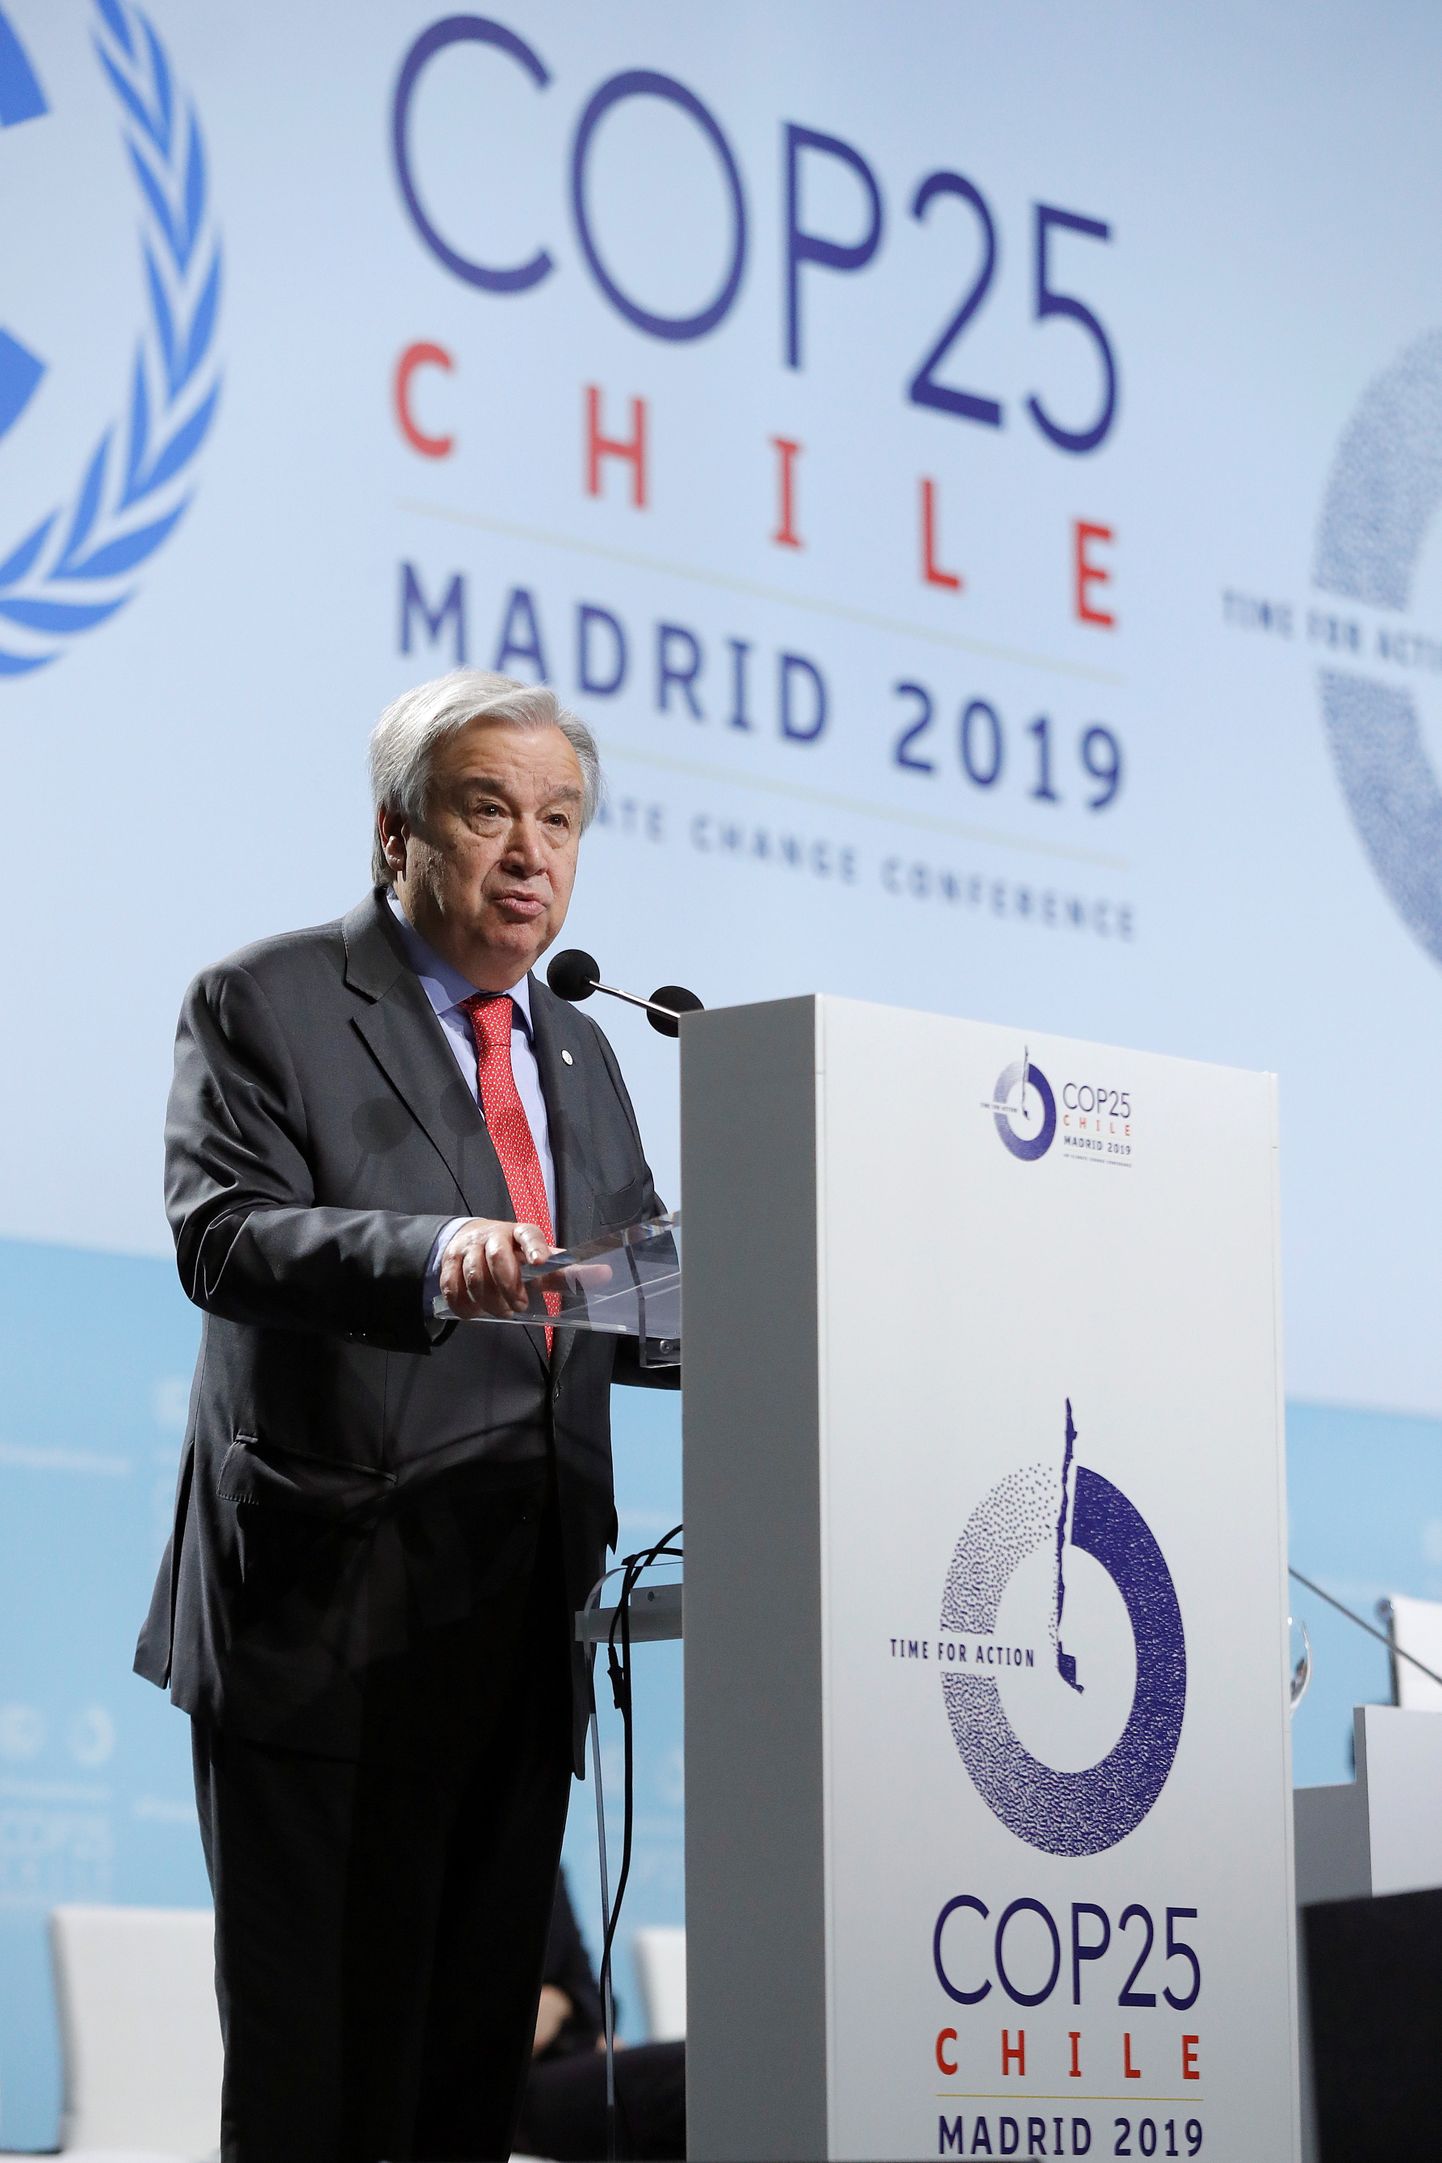 ÜRO peasekretär António Guterres esmaspäeval Madridis ÜRO kliimakonverentsi COP25 avades.